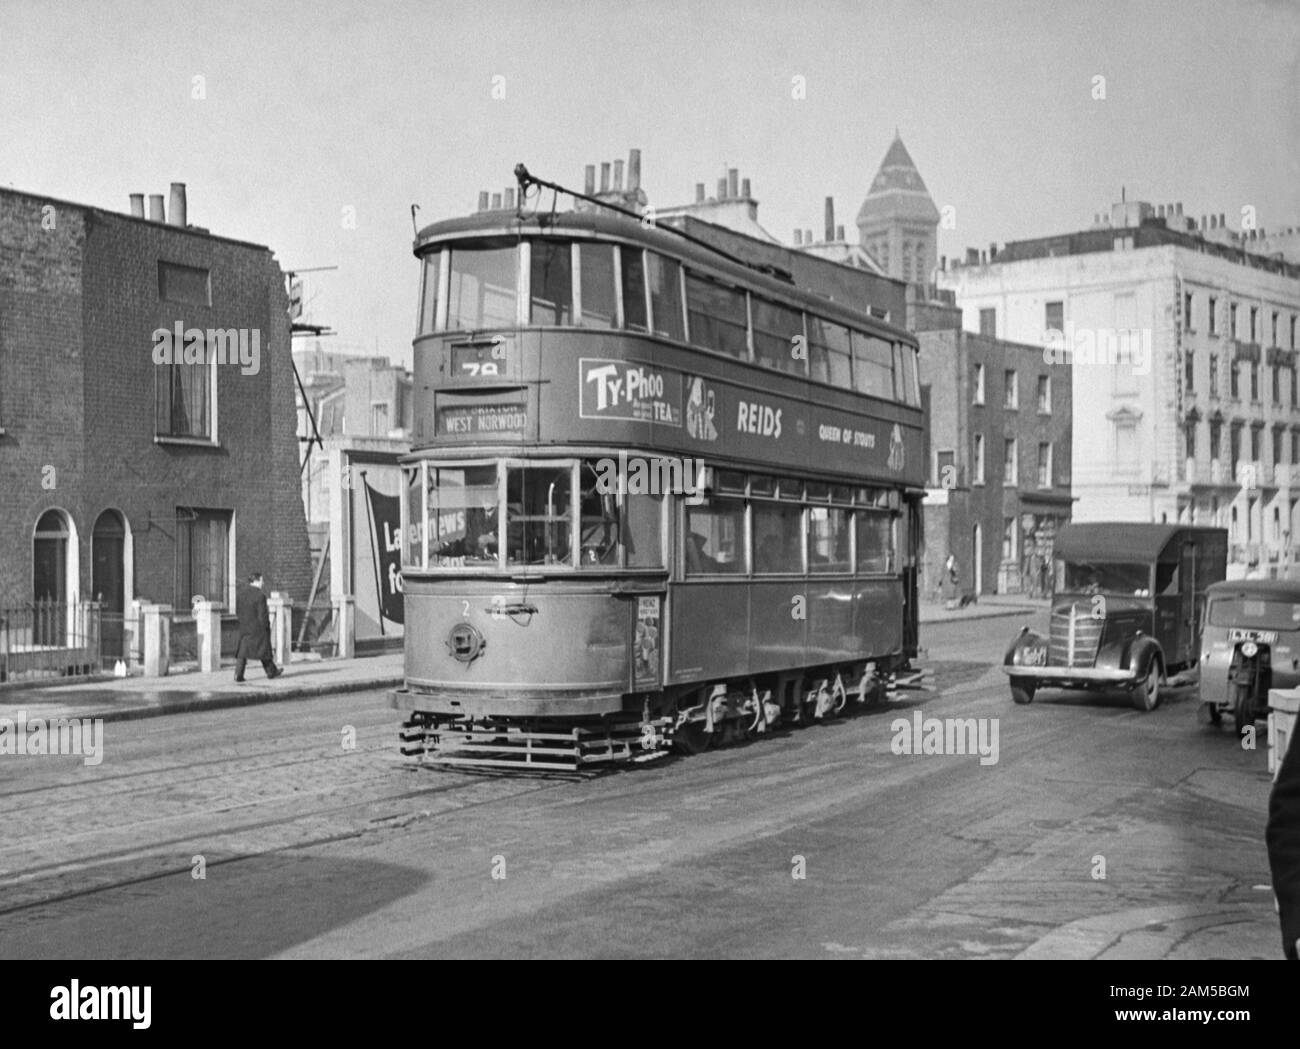 Londres el tranvía nº 2, clase E1 en la Route 78 West Norwood, alrededor de finales de 1940/principios de 1950 Foto de stock